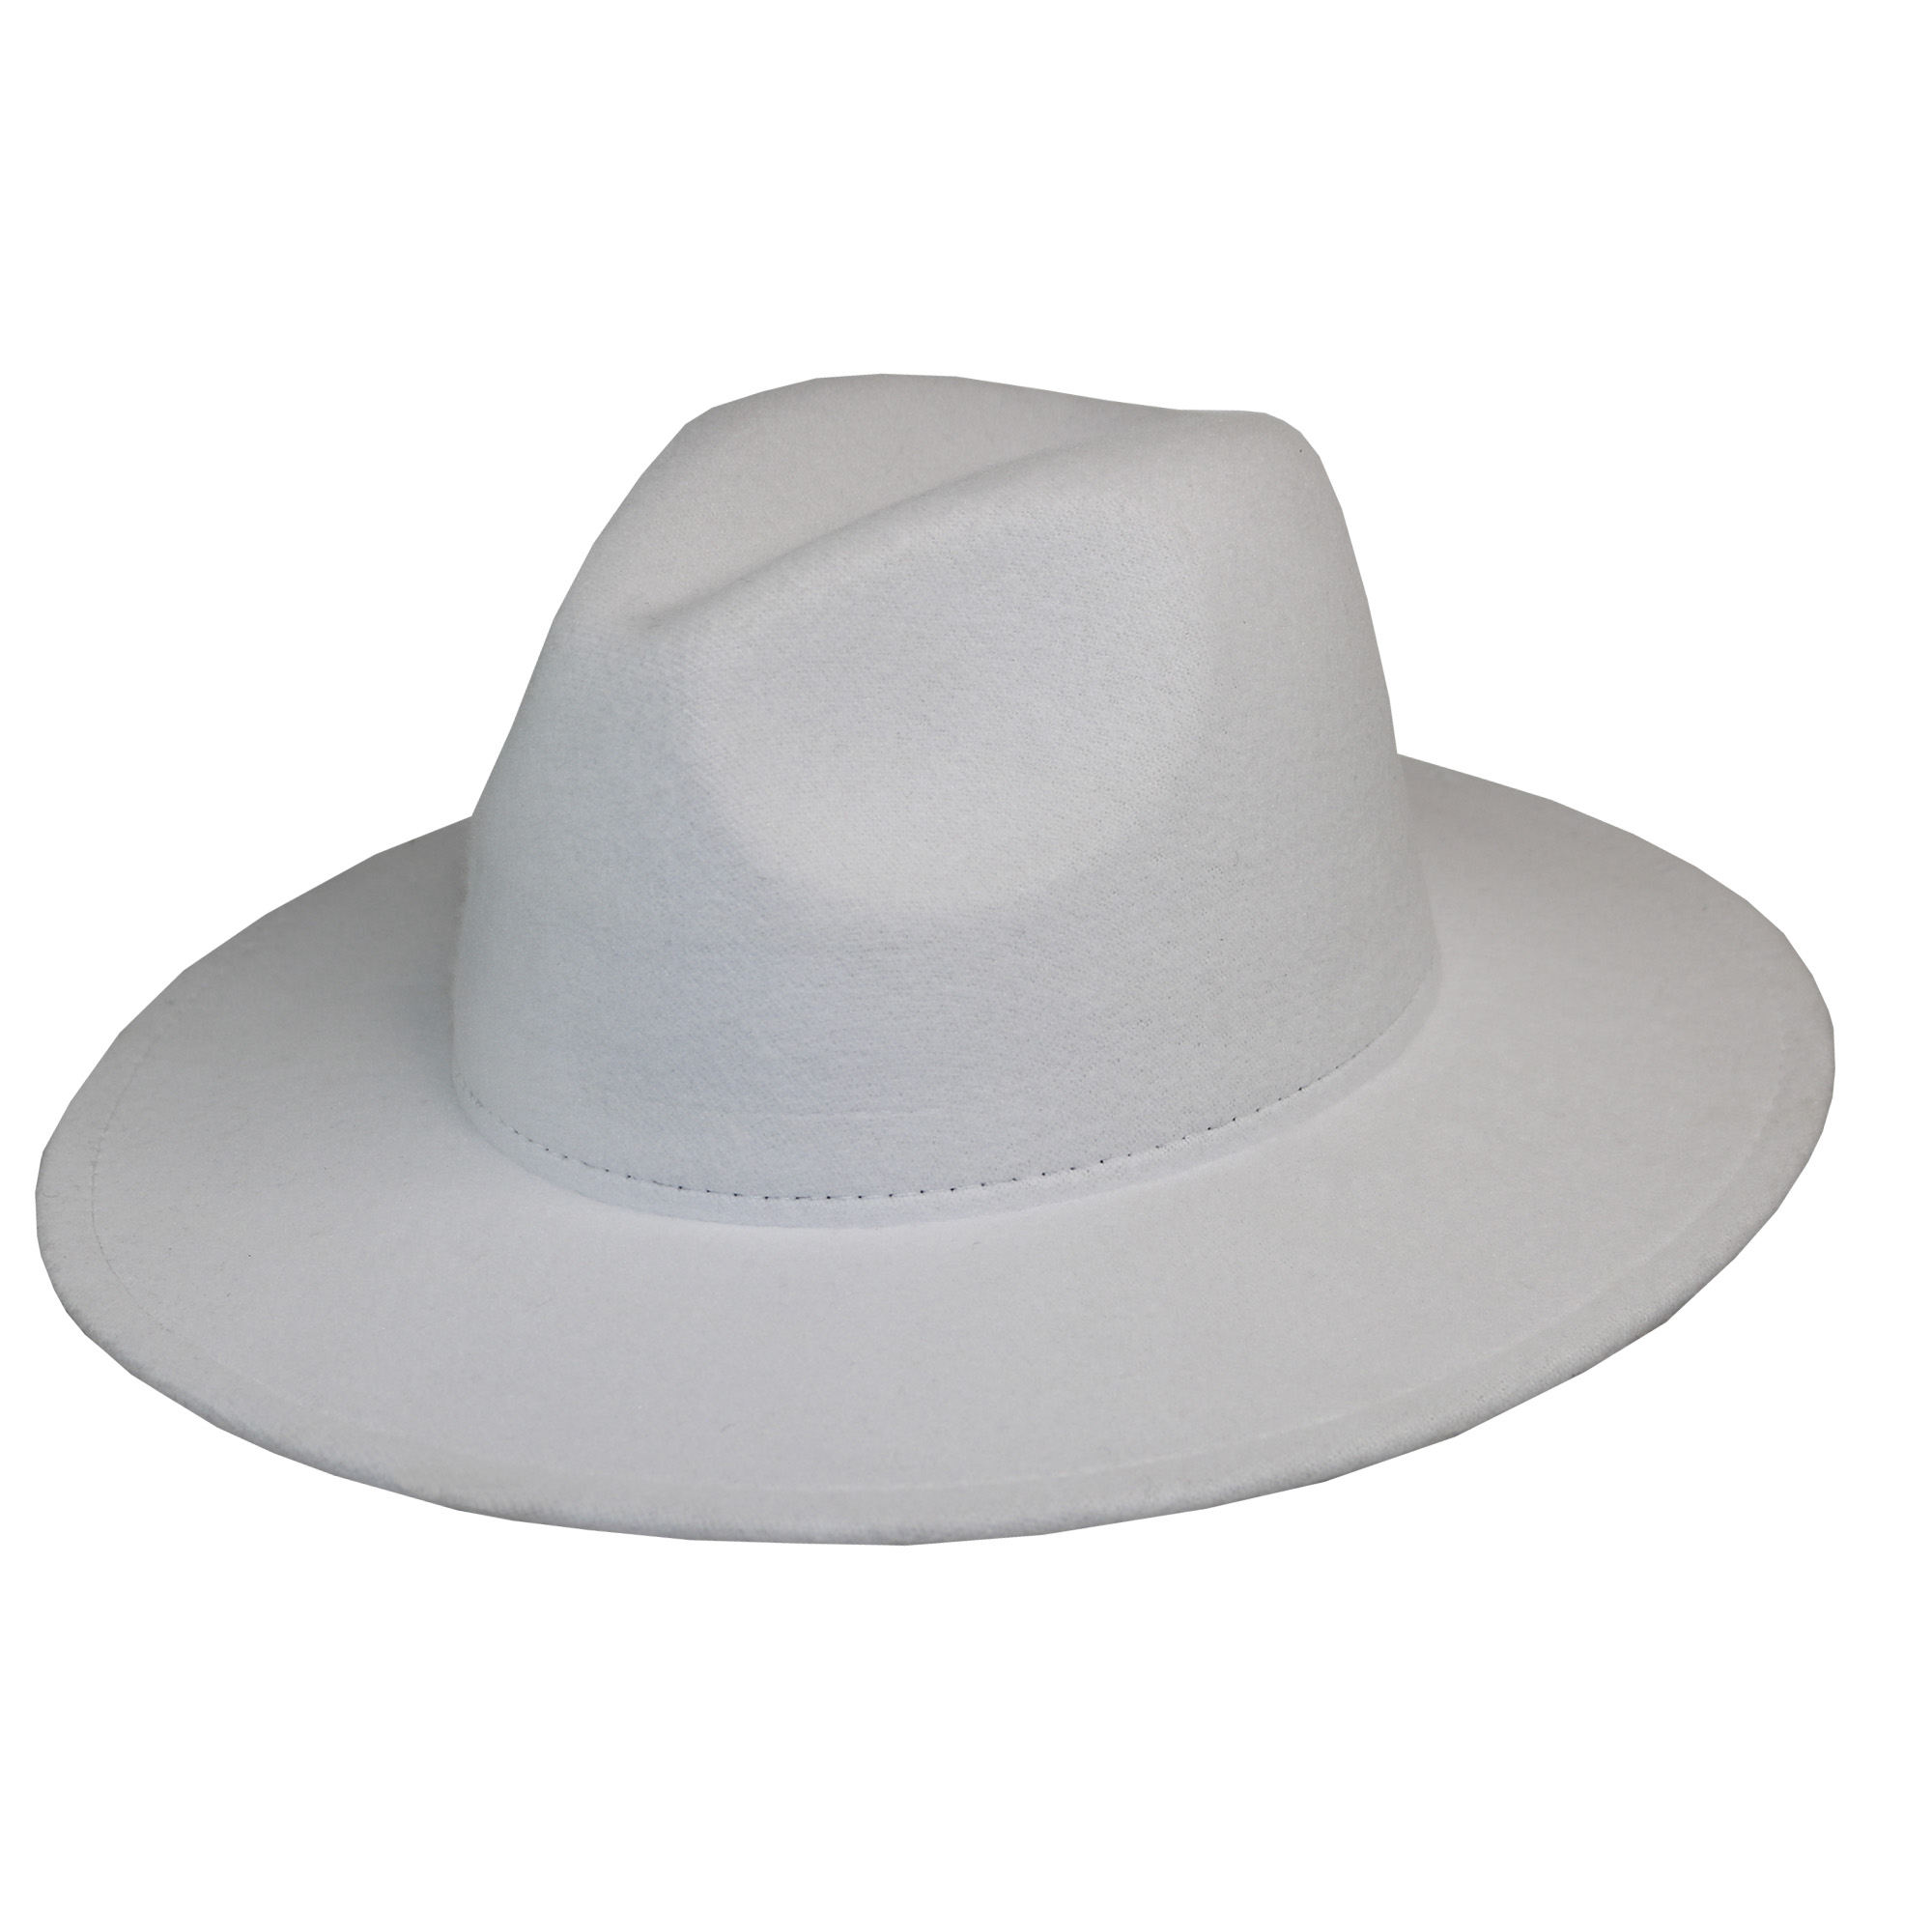 Sombrero de fieltro blanco para adulto.